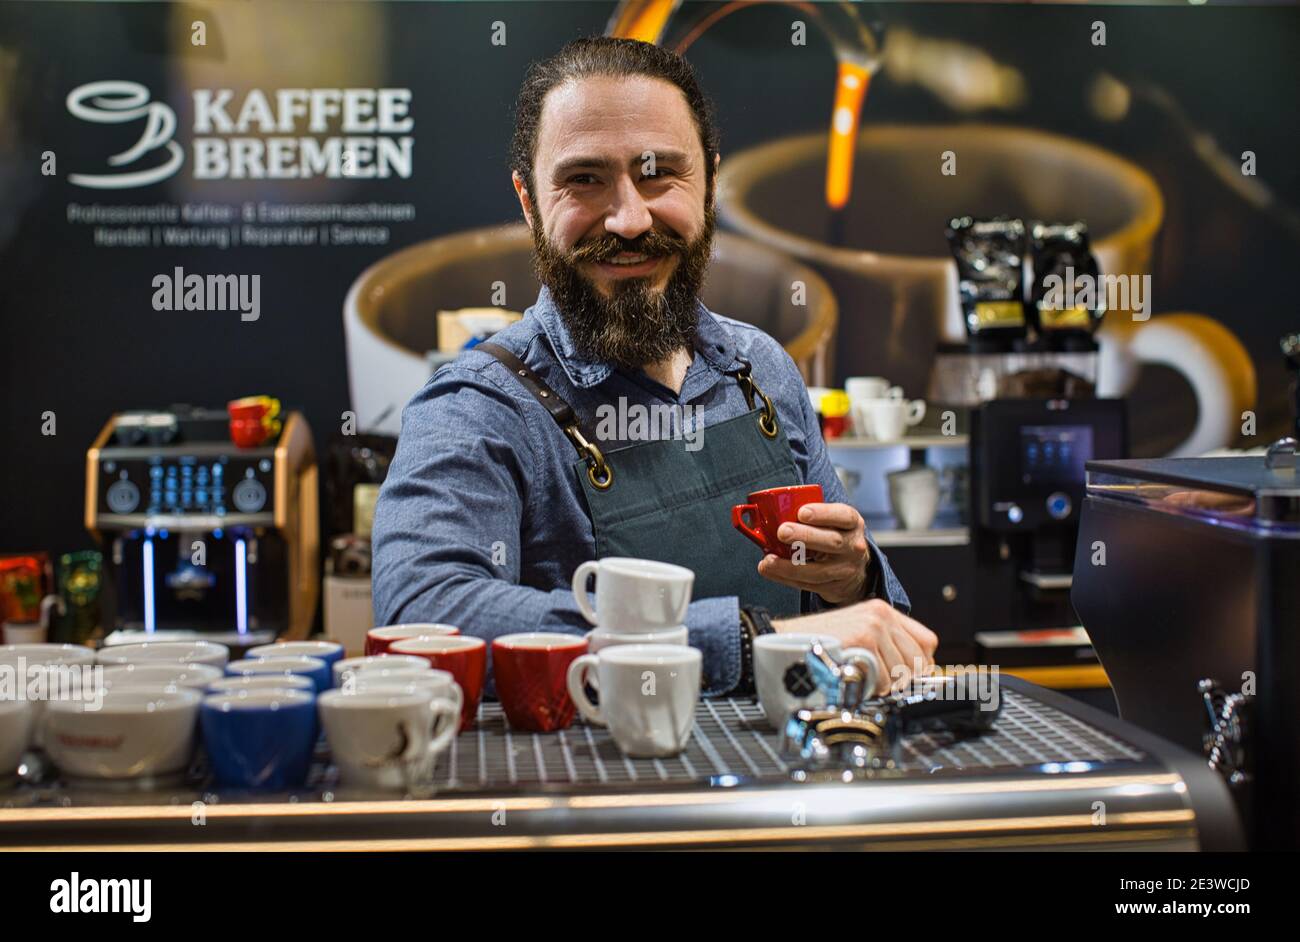 Ritratto di barista sorridente con macchina da caffè, macchina da caffè espresso, macinacaffè, tazze per fare bevande Foto Stock